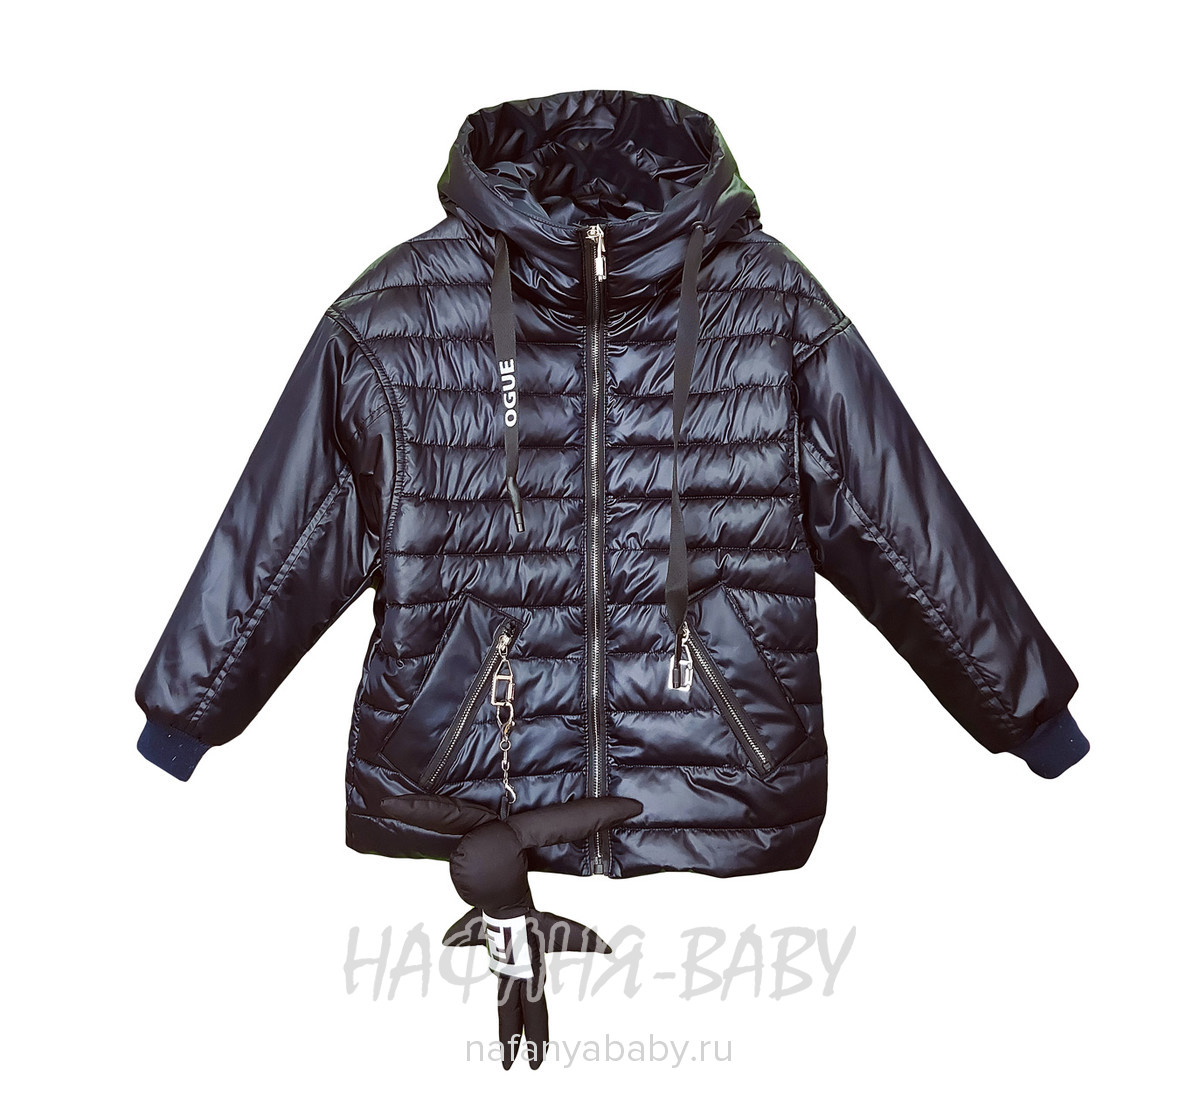 Демисезонная куртка на биопухе DELFIN-FREE, купить в интернет магазине Нафаня. арт: 2188.